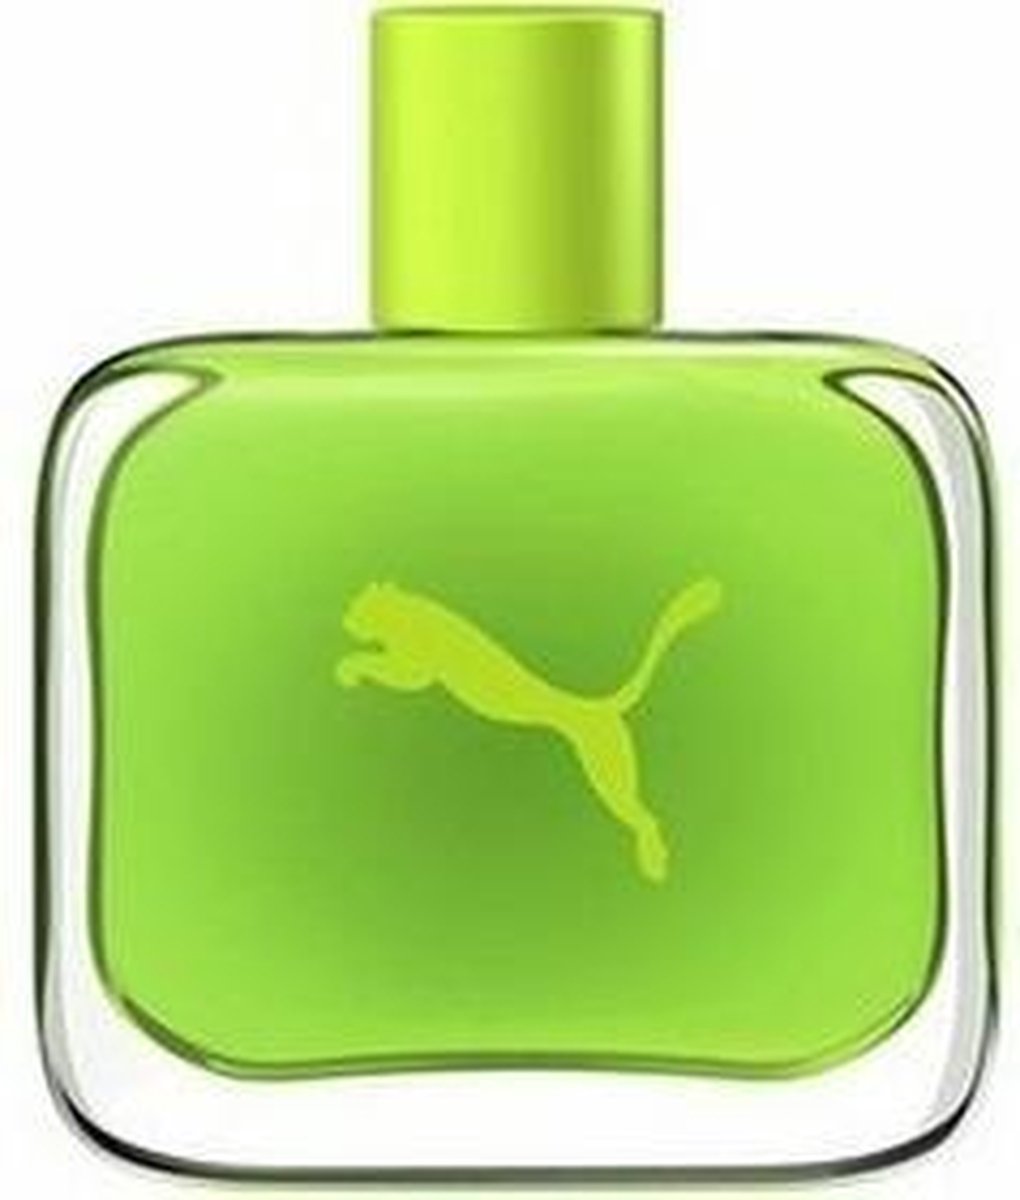 Puma Green by Puma 90 ml - Eau De Toilette Spray